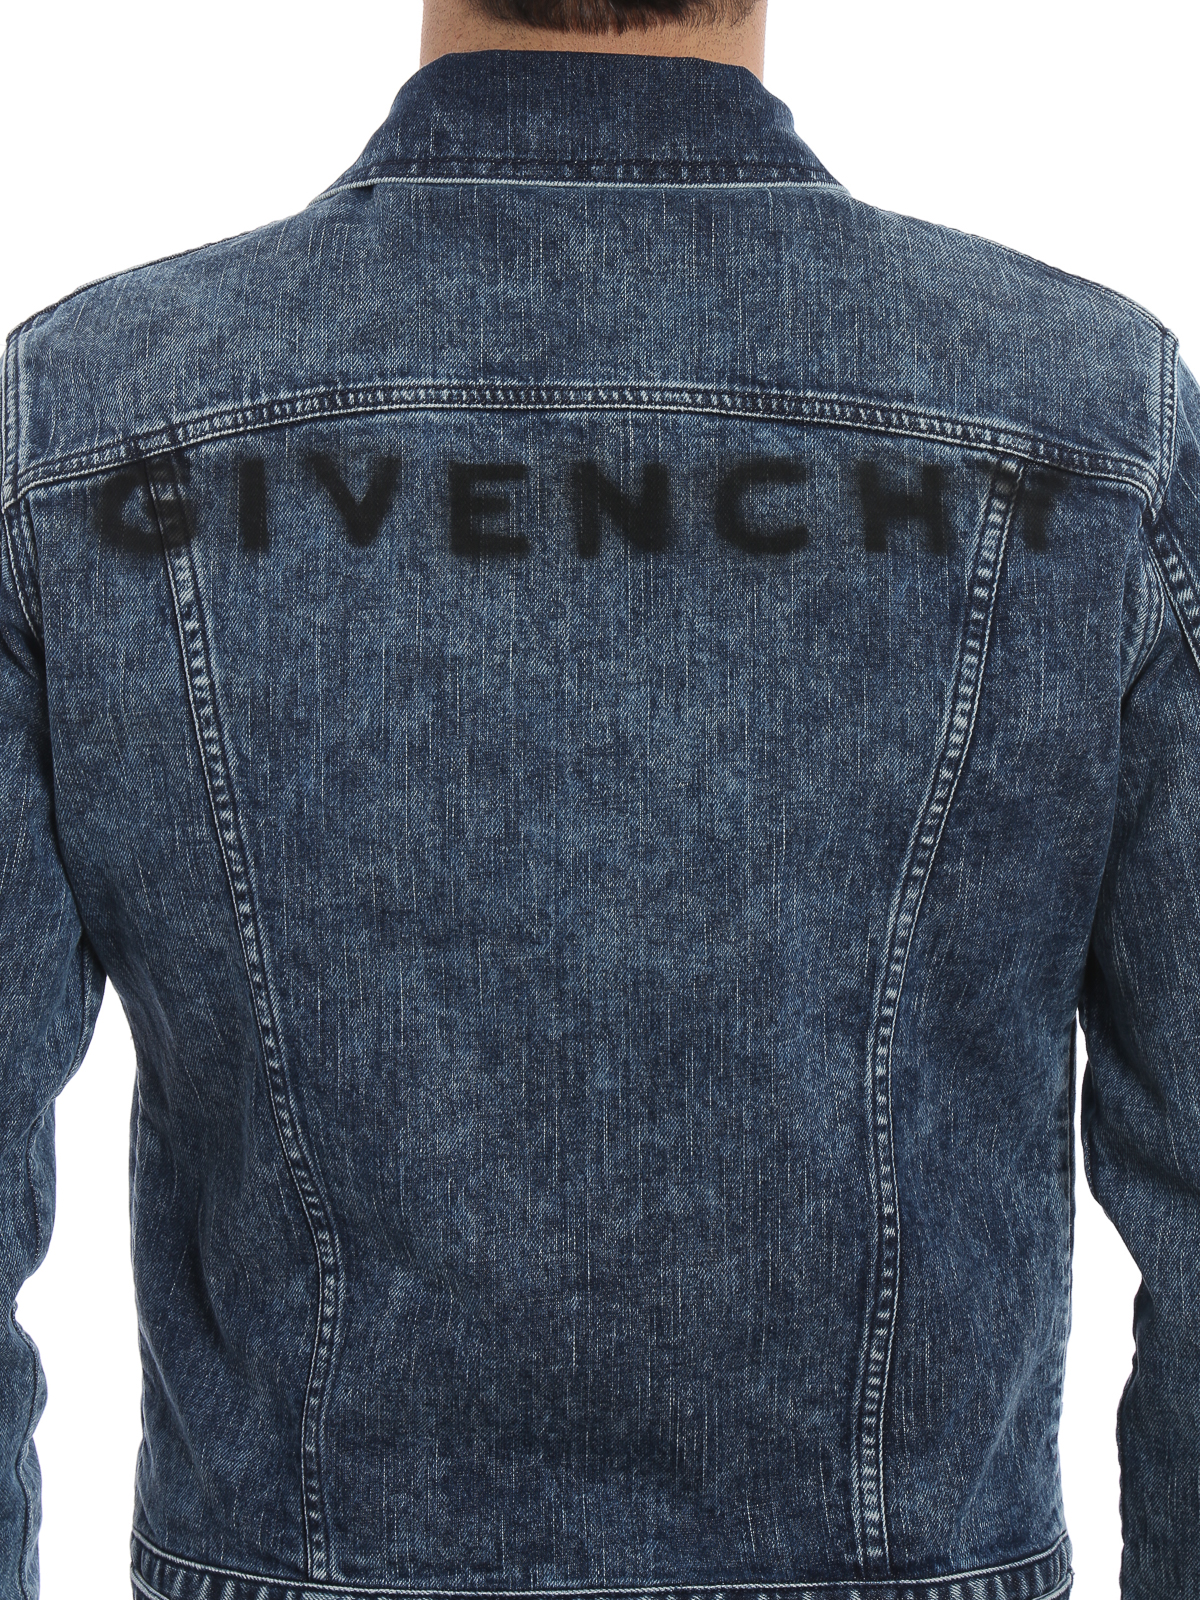 Denim jacket Givenchy - Stretch denim jacket - BM008C5074400 